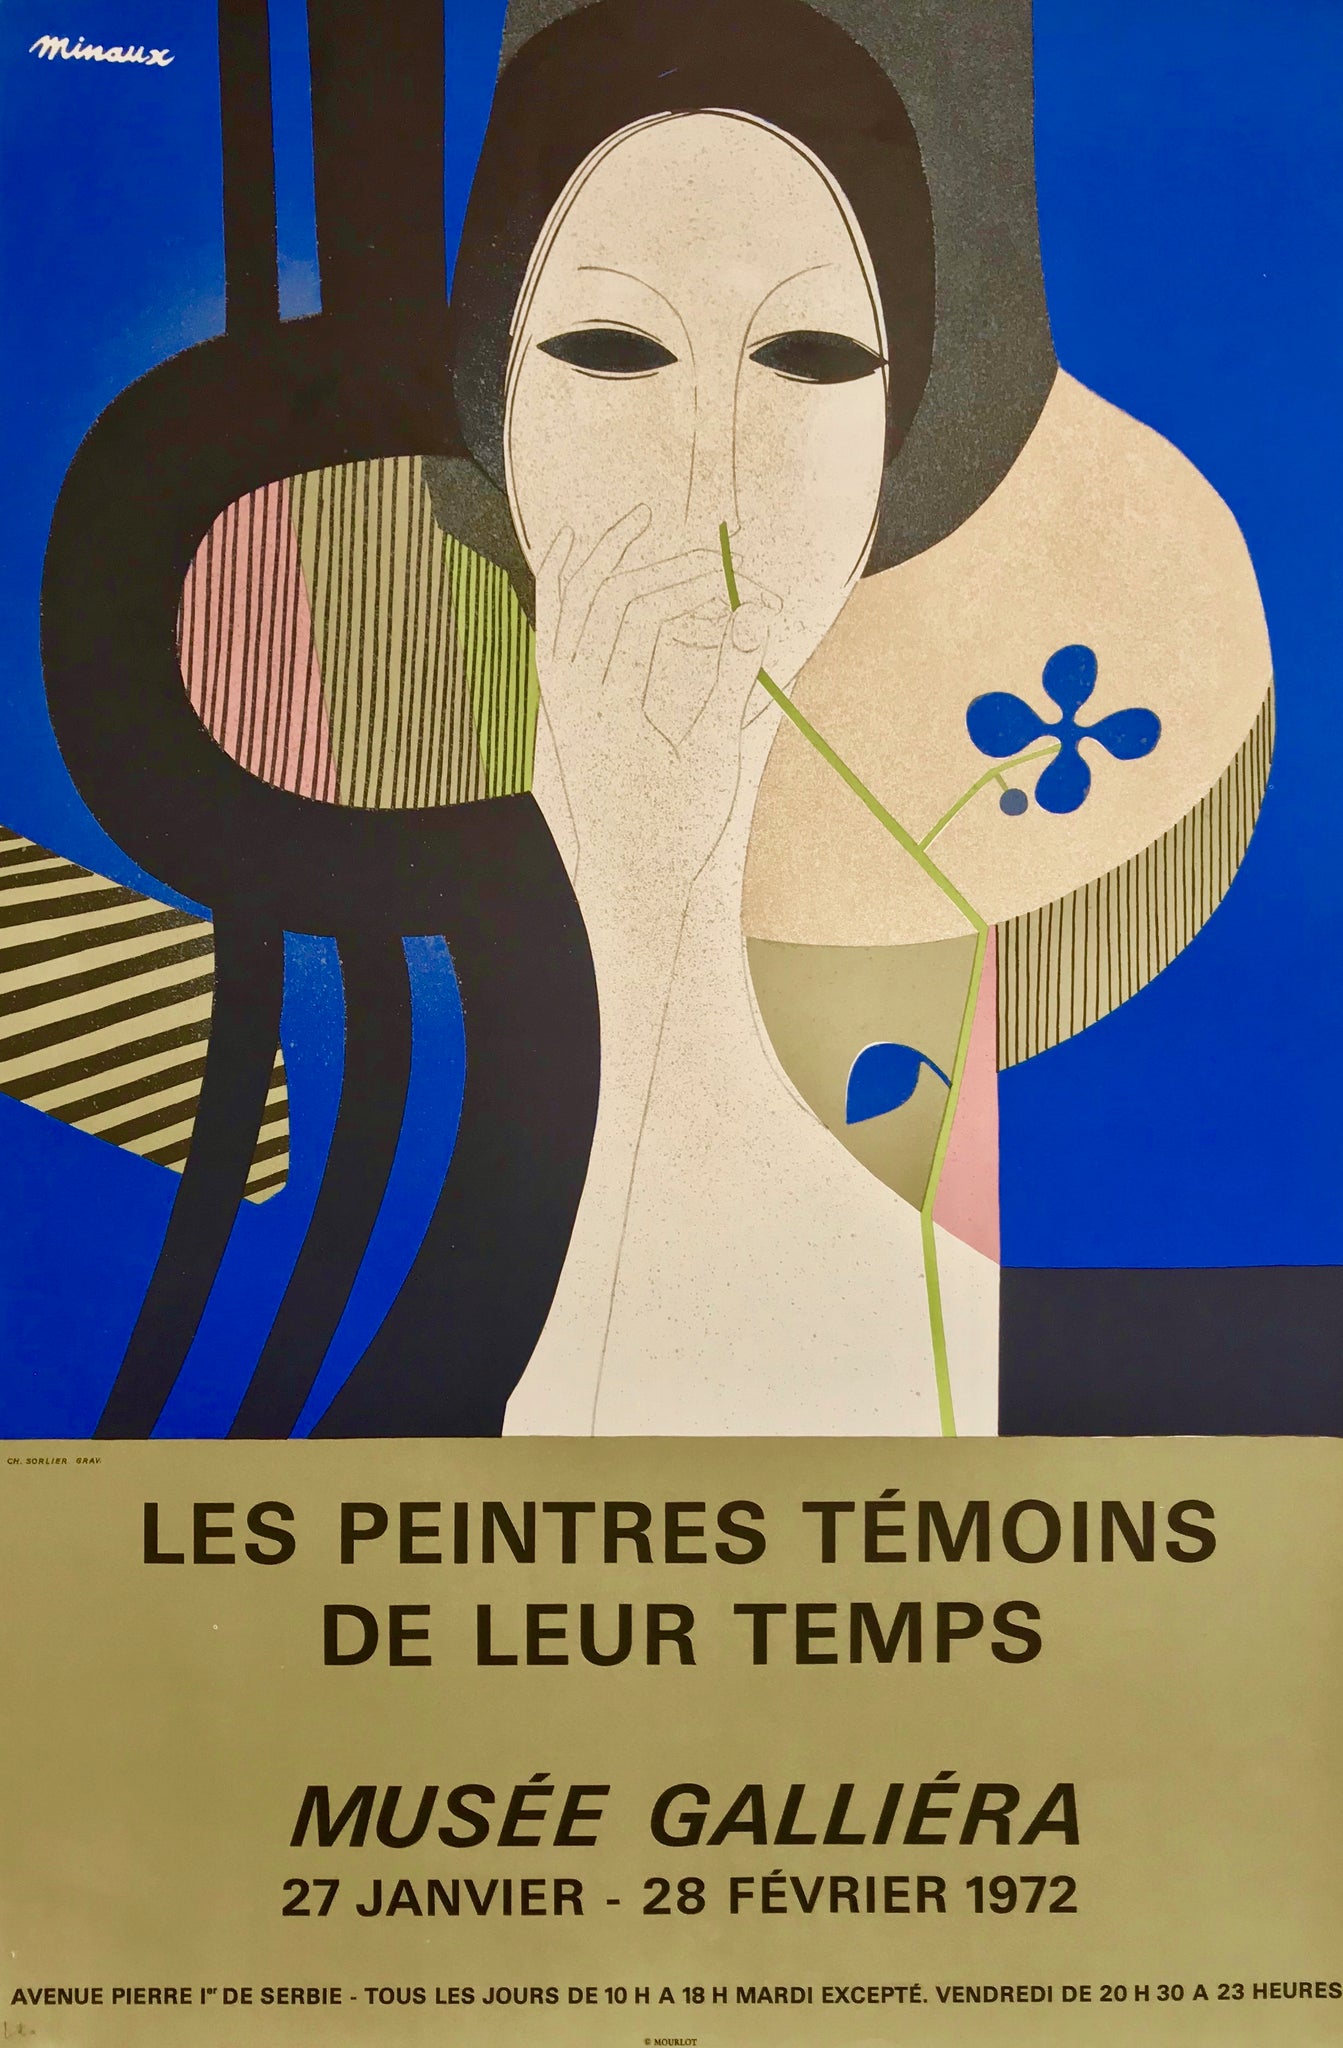 Affiche originale du Musée Galliera pour l'exposition  "Les peintres témoins de leur temps", dessinée par André Minaux.  Du 27 Janvier au 28 Février 1972